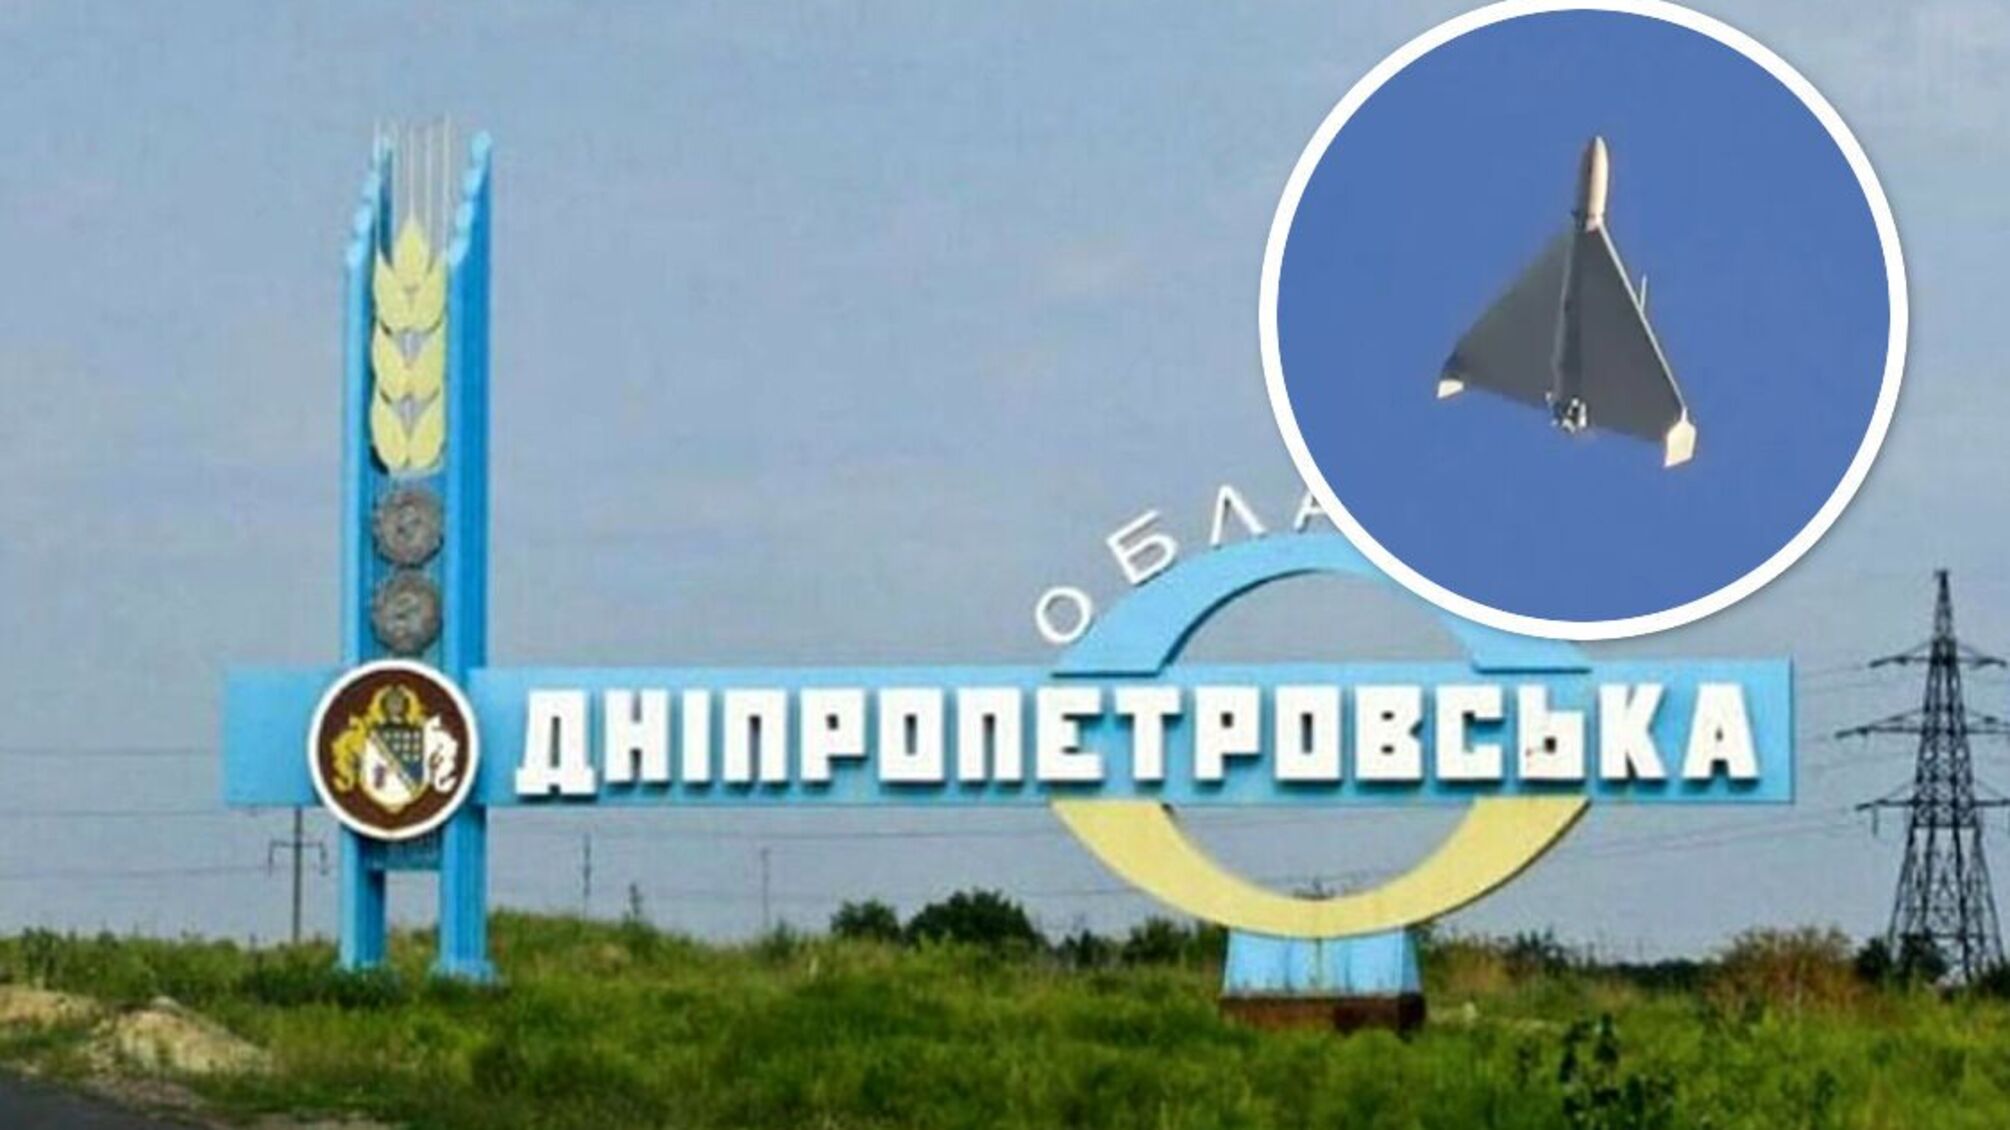 Днепропетровская область - атака 'Шахедов'